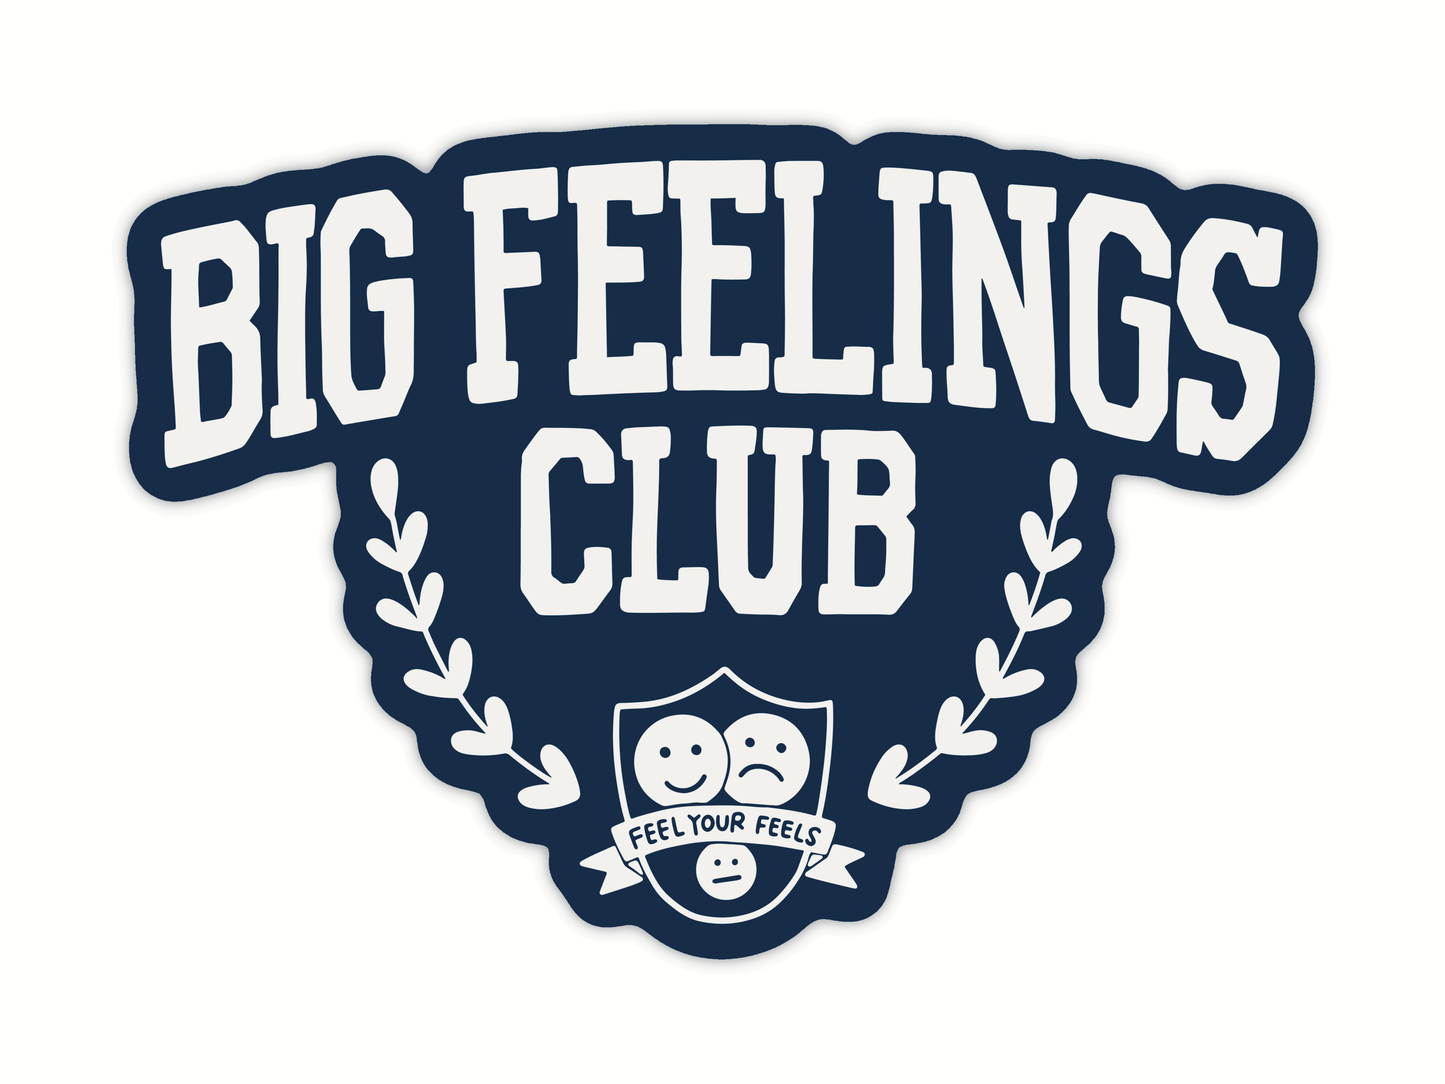 Big Feelings Club Sticker | Mental Health Laptop Sticker